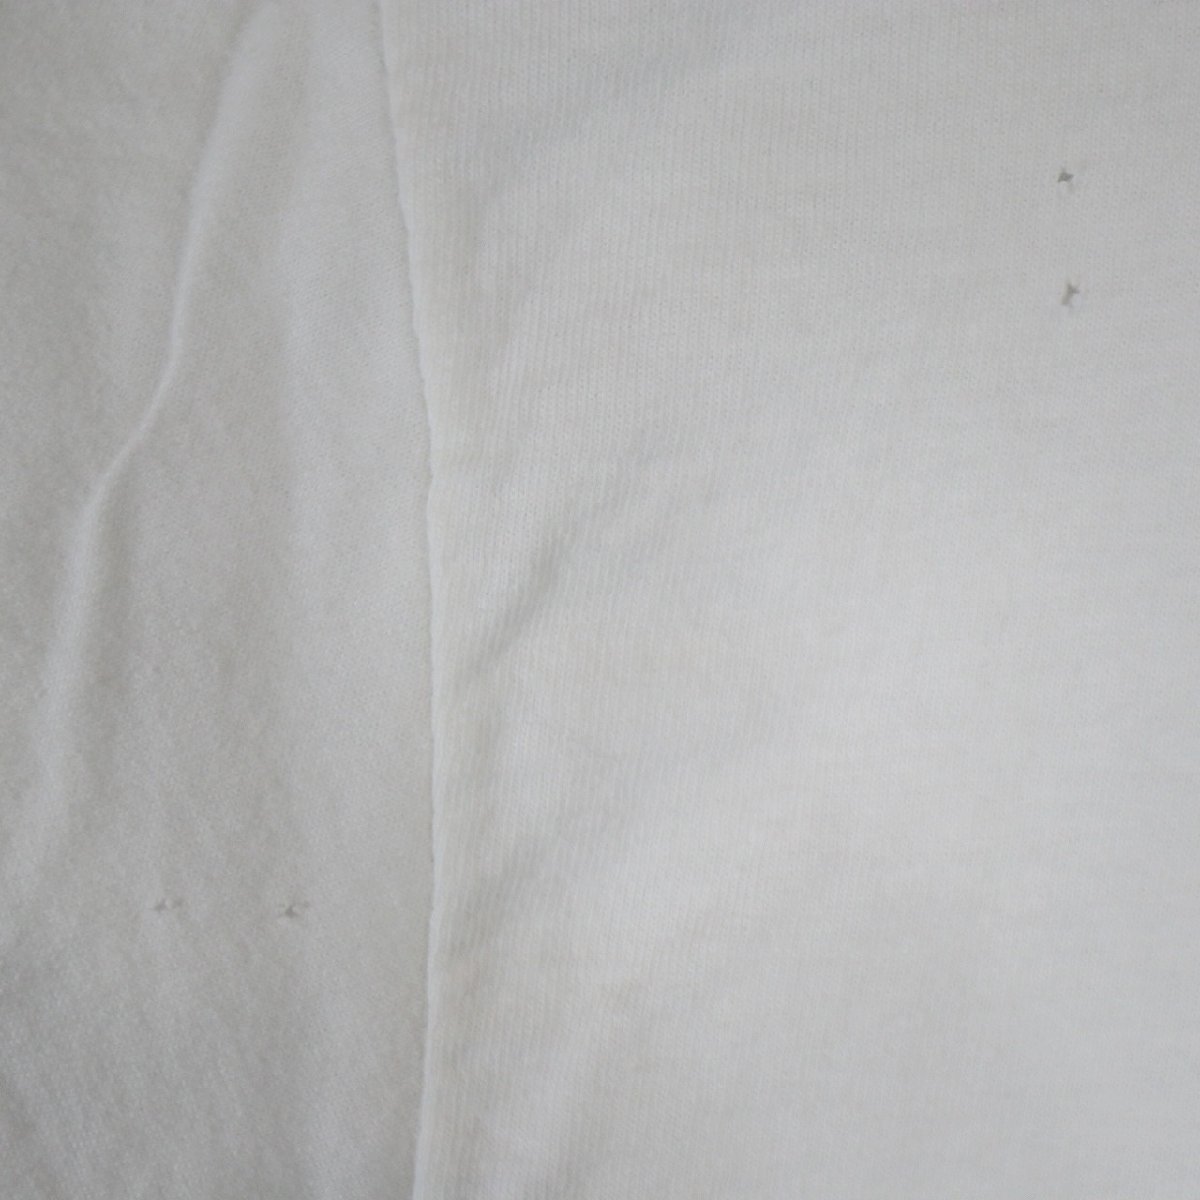 SALE///// 00s FRUIT OF THE LOOM オバマ大統領 プリント 半袖 Tシャツ 著名人 人物 大きいサイズ ホワイト ( メンズ XL ) N1262_画像6